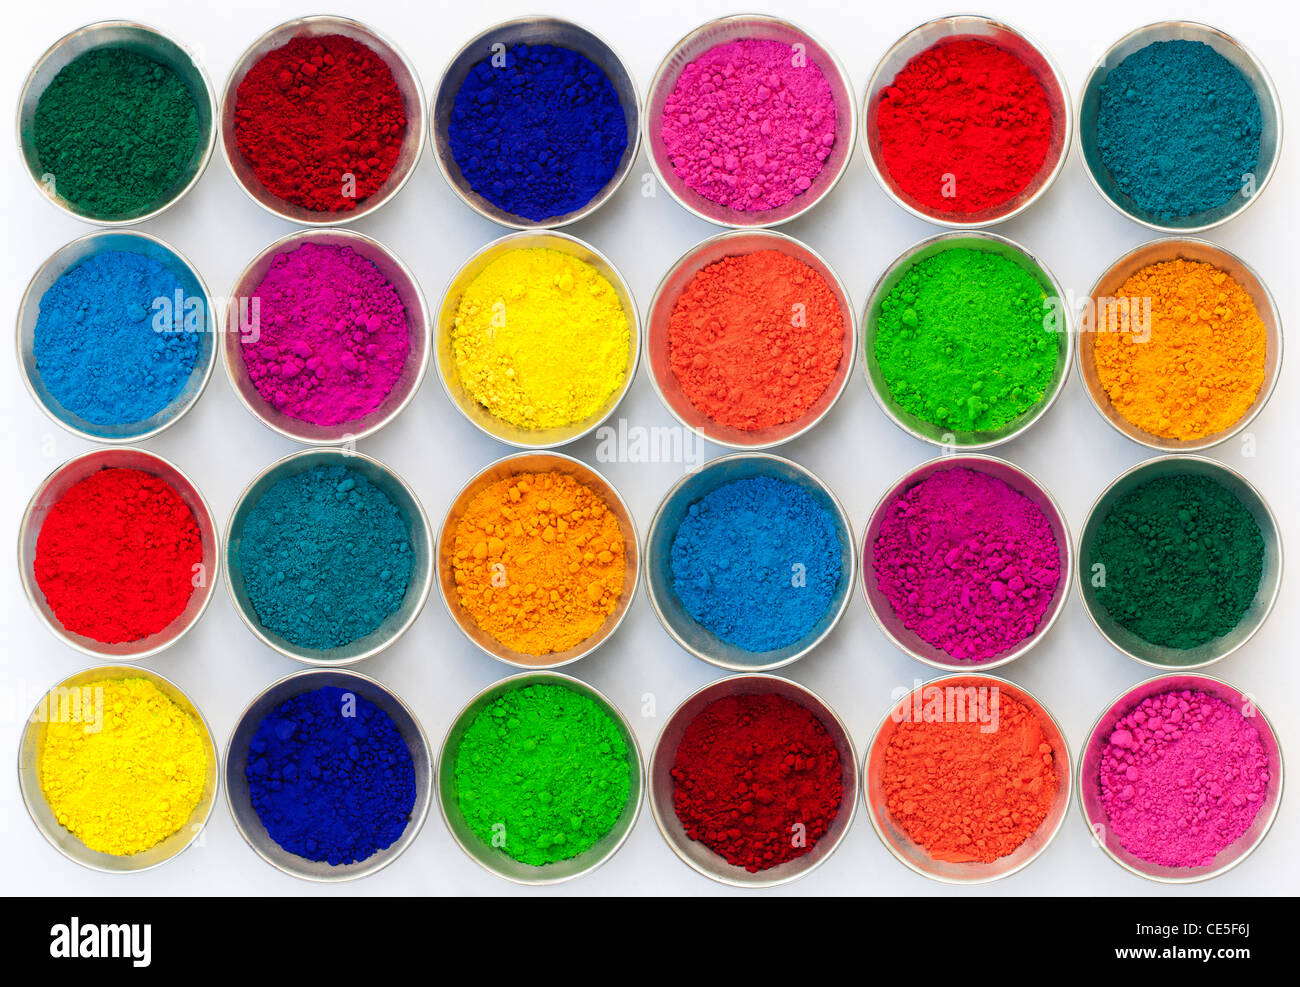 Indios de color en polvo en recipientes metálicos utilizados para hacer rangoli diseños. Fondo blanco Foto de stock